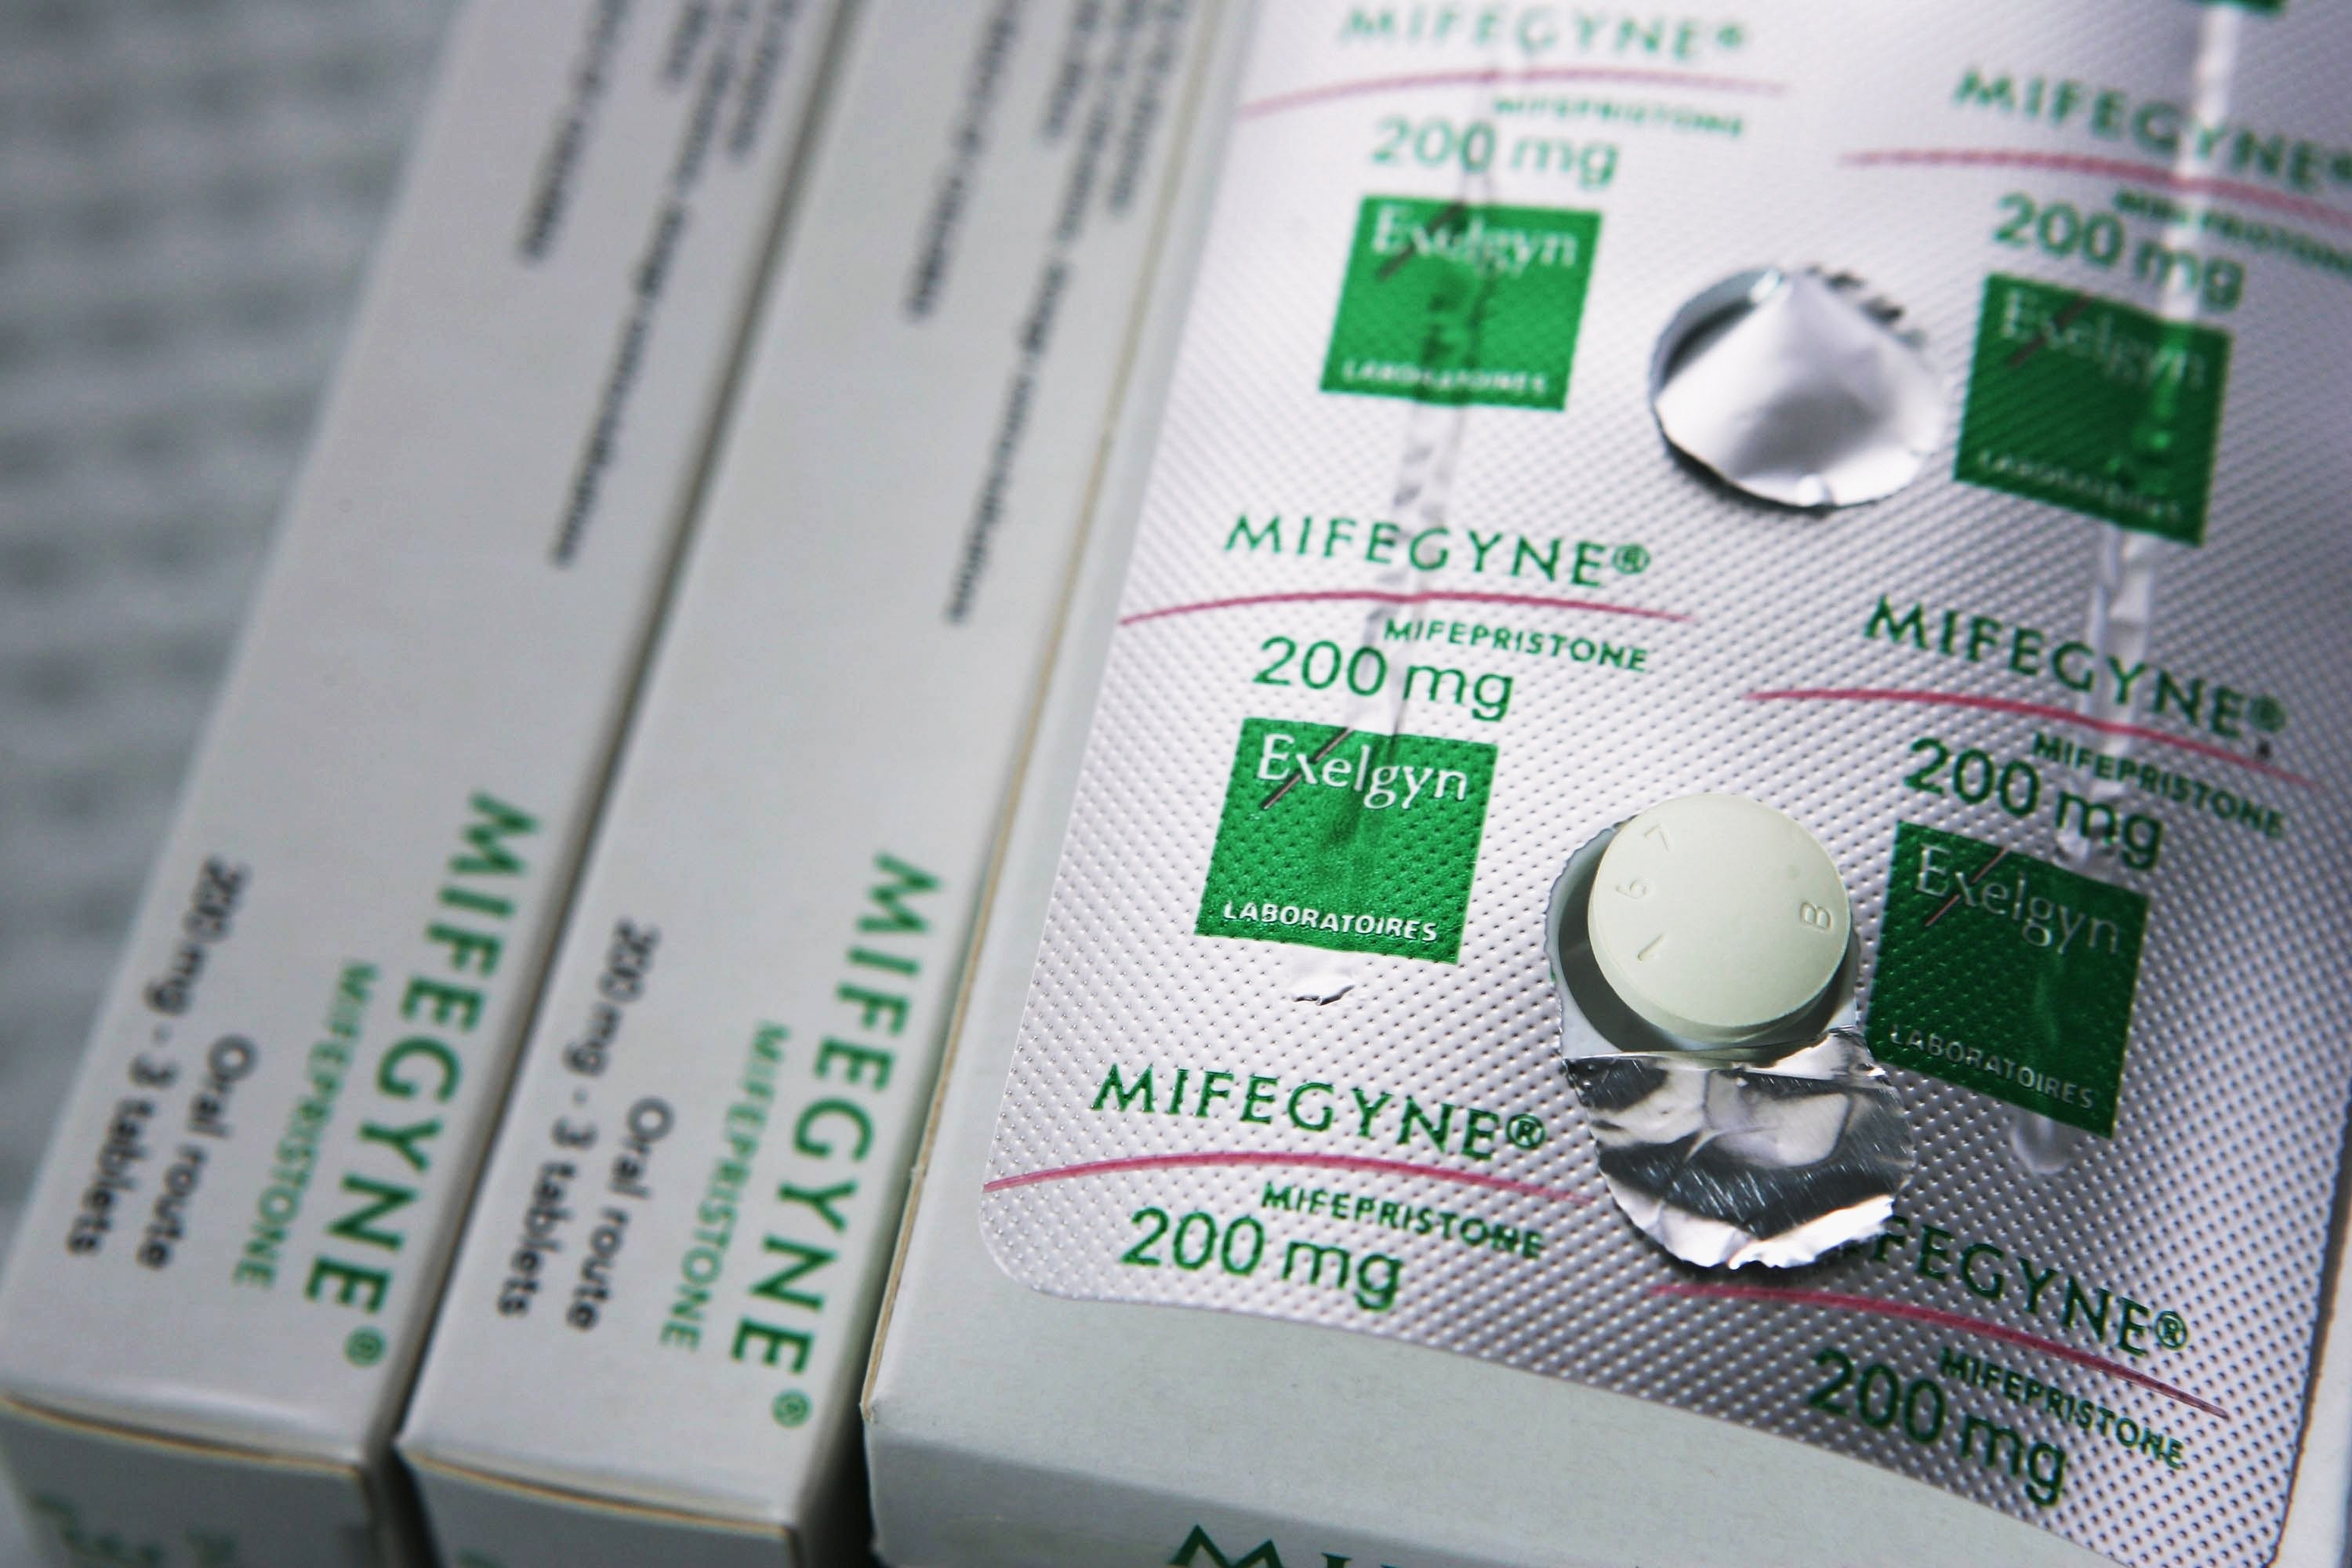 Где купить таблетки для прерывания беременности. "Mifepristone" (мифепристон). Мифегин медикаментозное прерывание. Мифегин 200 мг. Таблетки от прерывания беременности Мифегин.